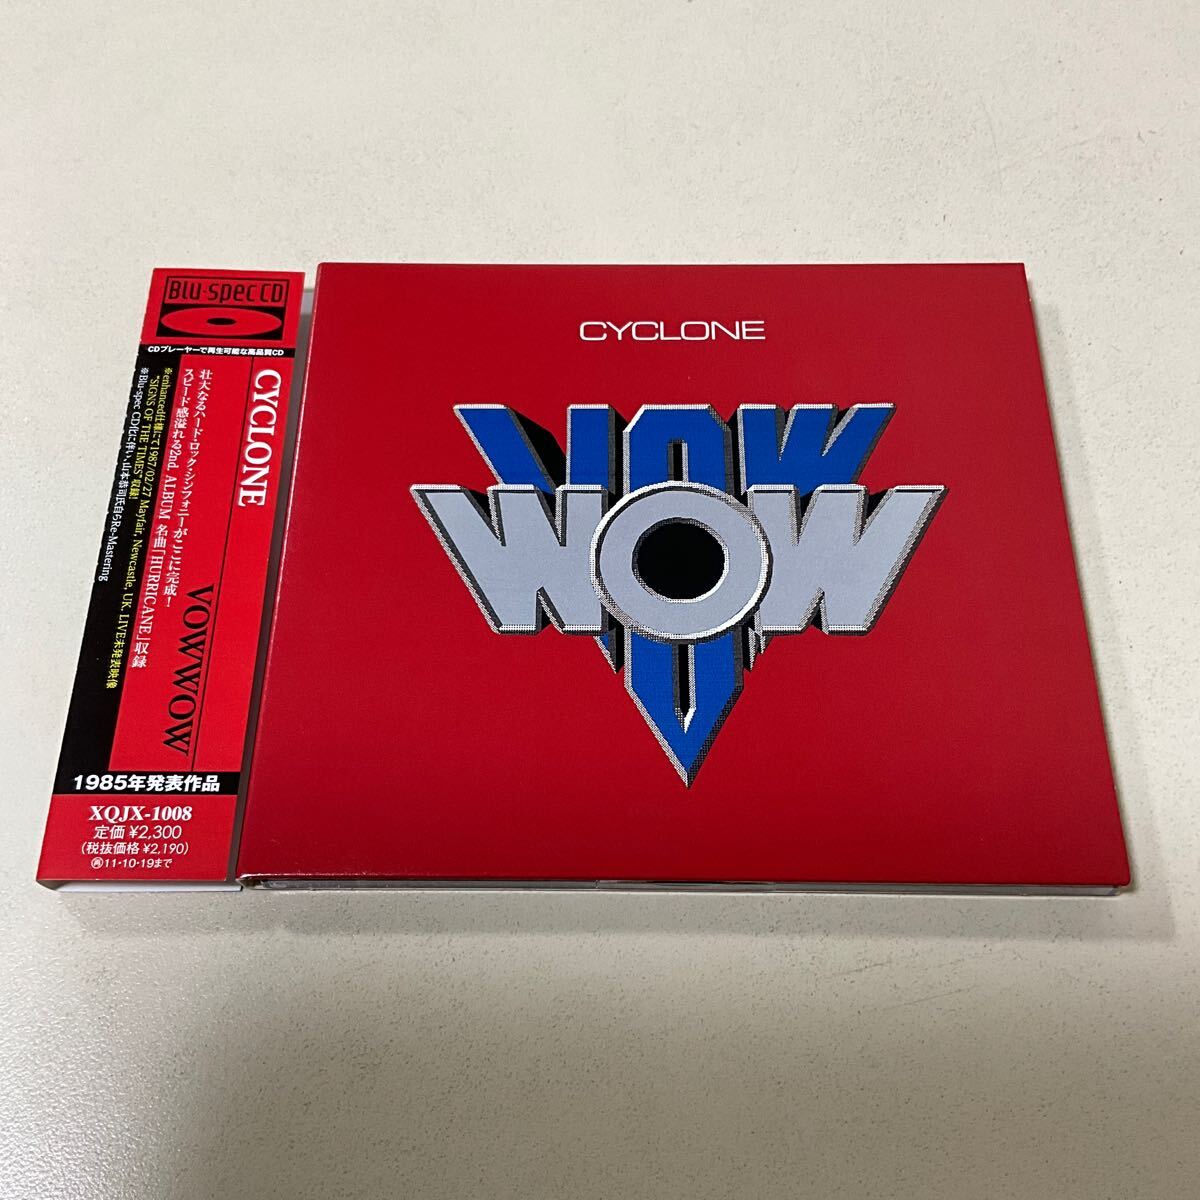 ジャパメタ 国内盤 帯付 Blu-spec CD CYCLONE CD VOW WOW_画像1